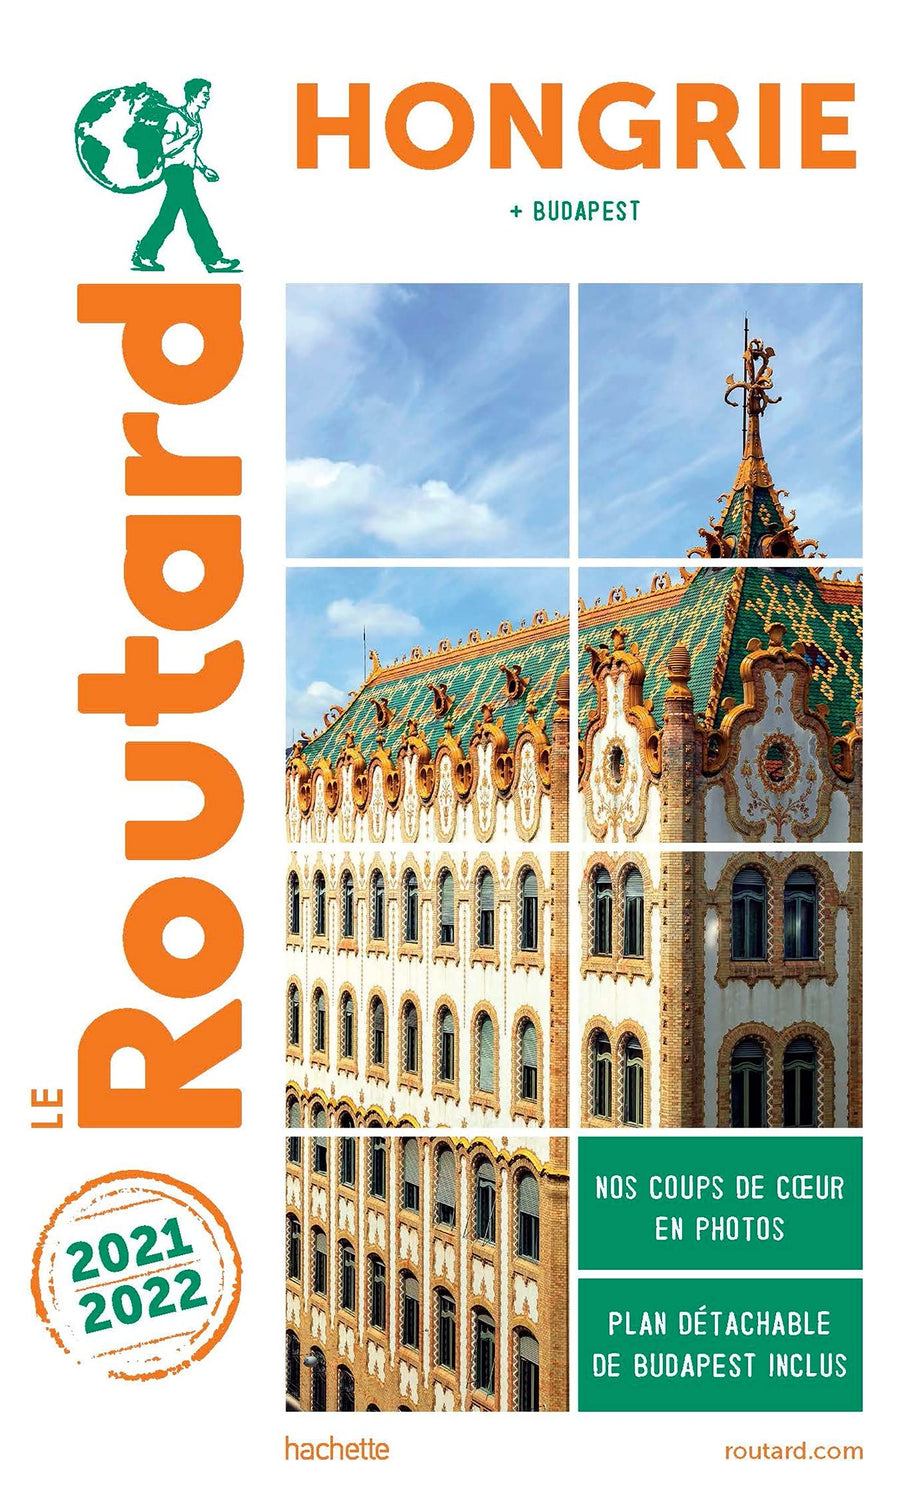 Guide du Routard - Hongrie & Budapest 2021/22 | Hachette guide de voyage Hachette 